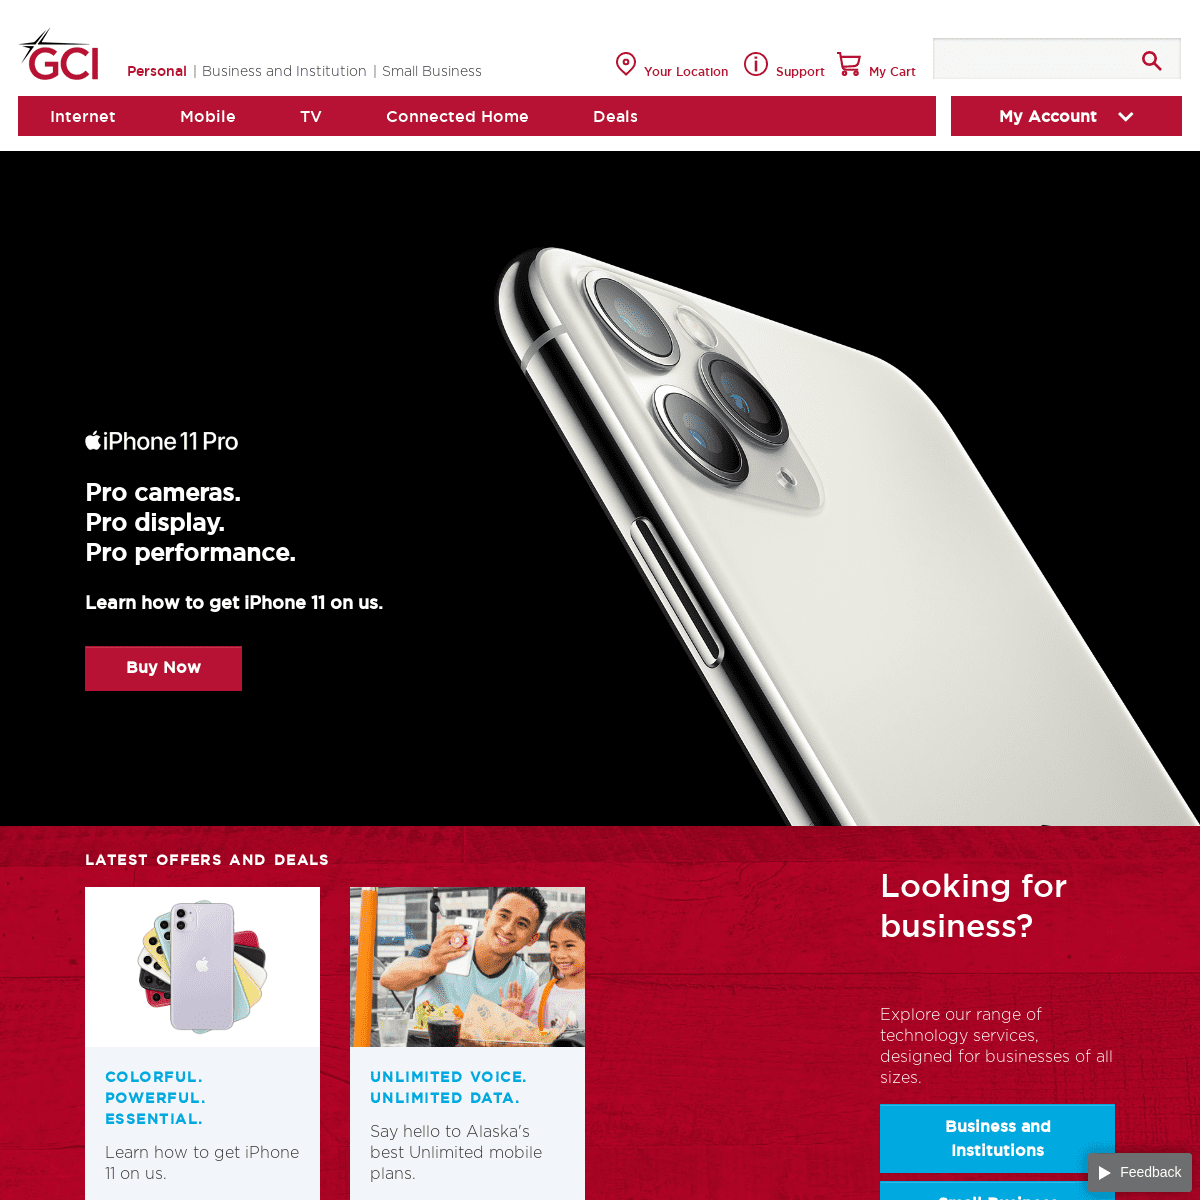 A complete backup of gci.com